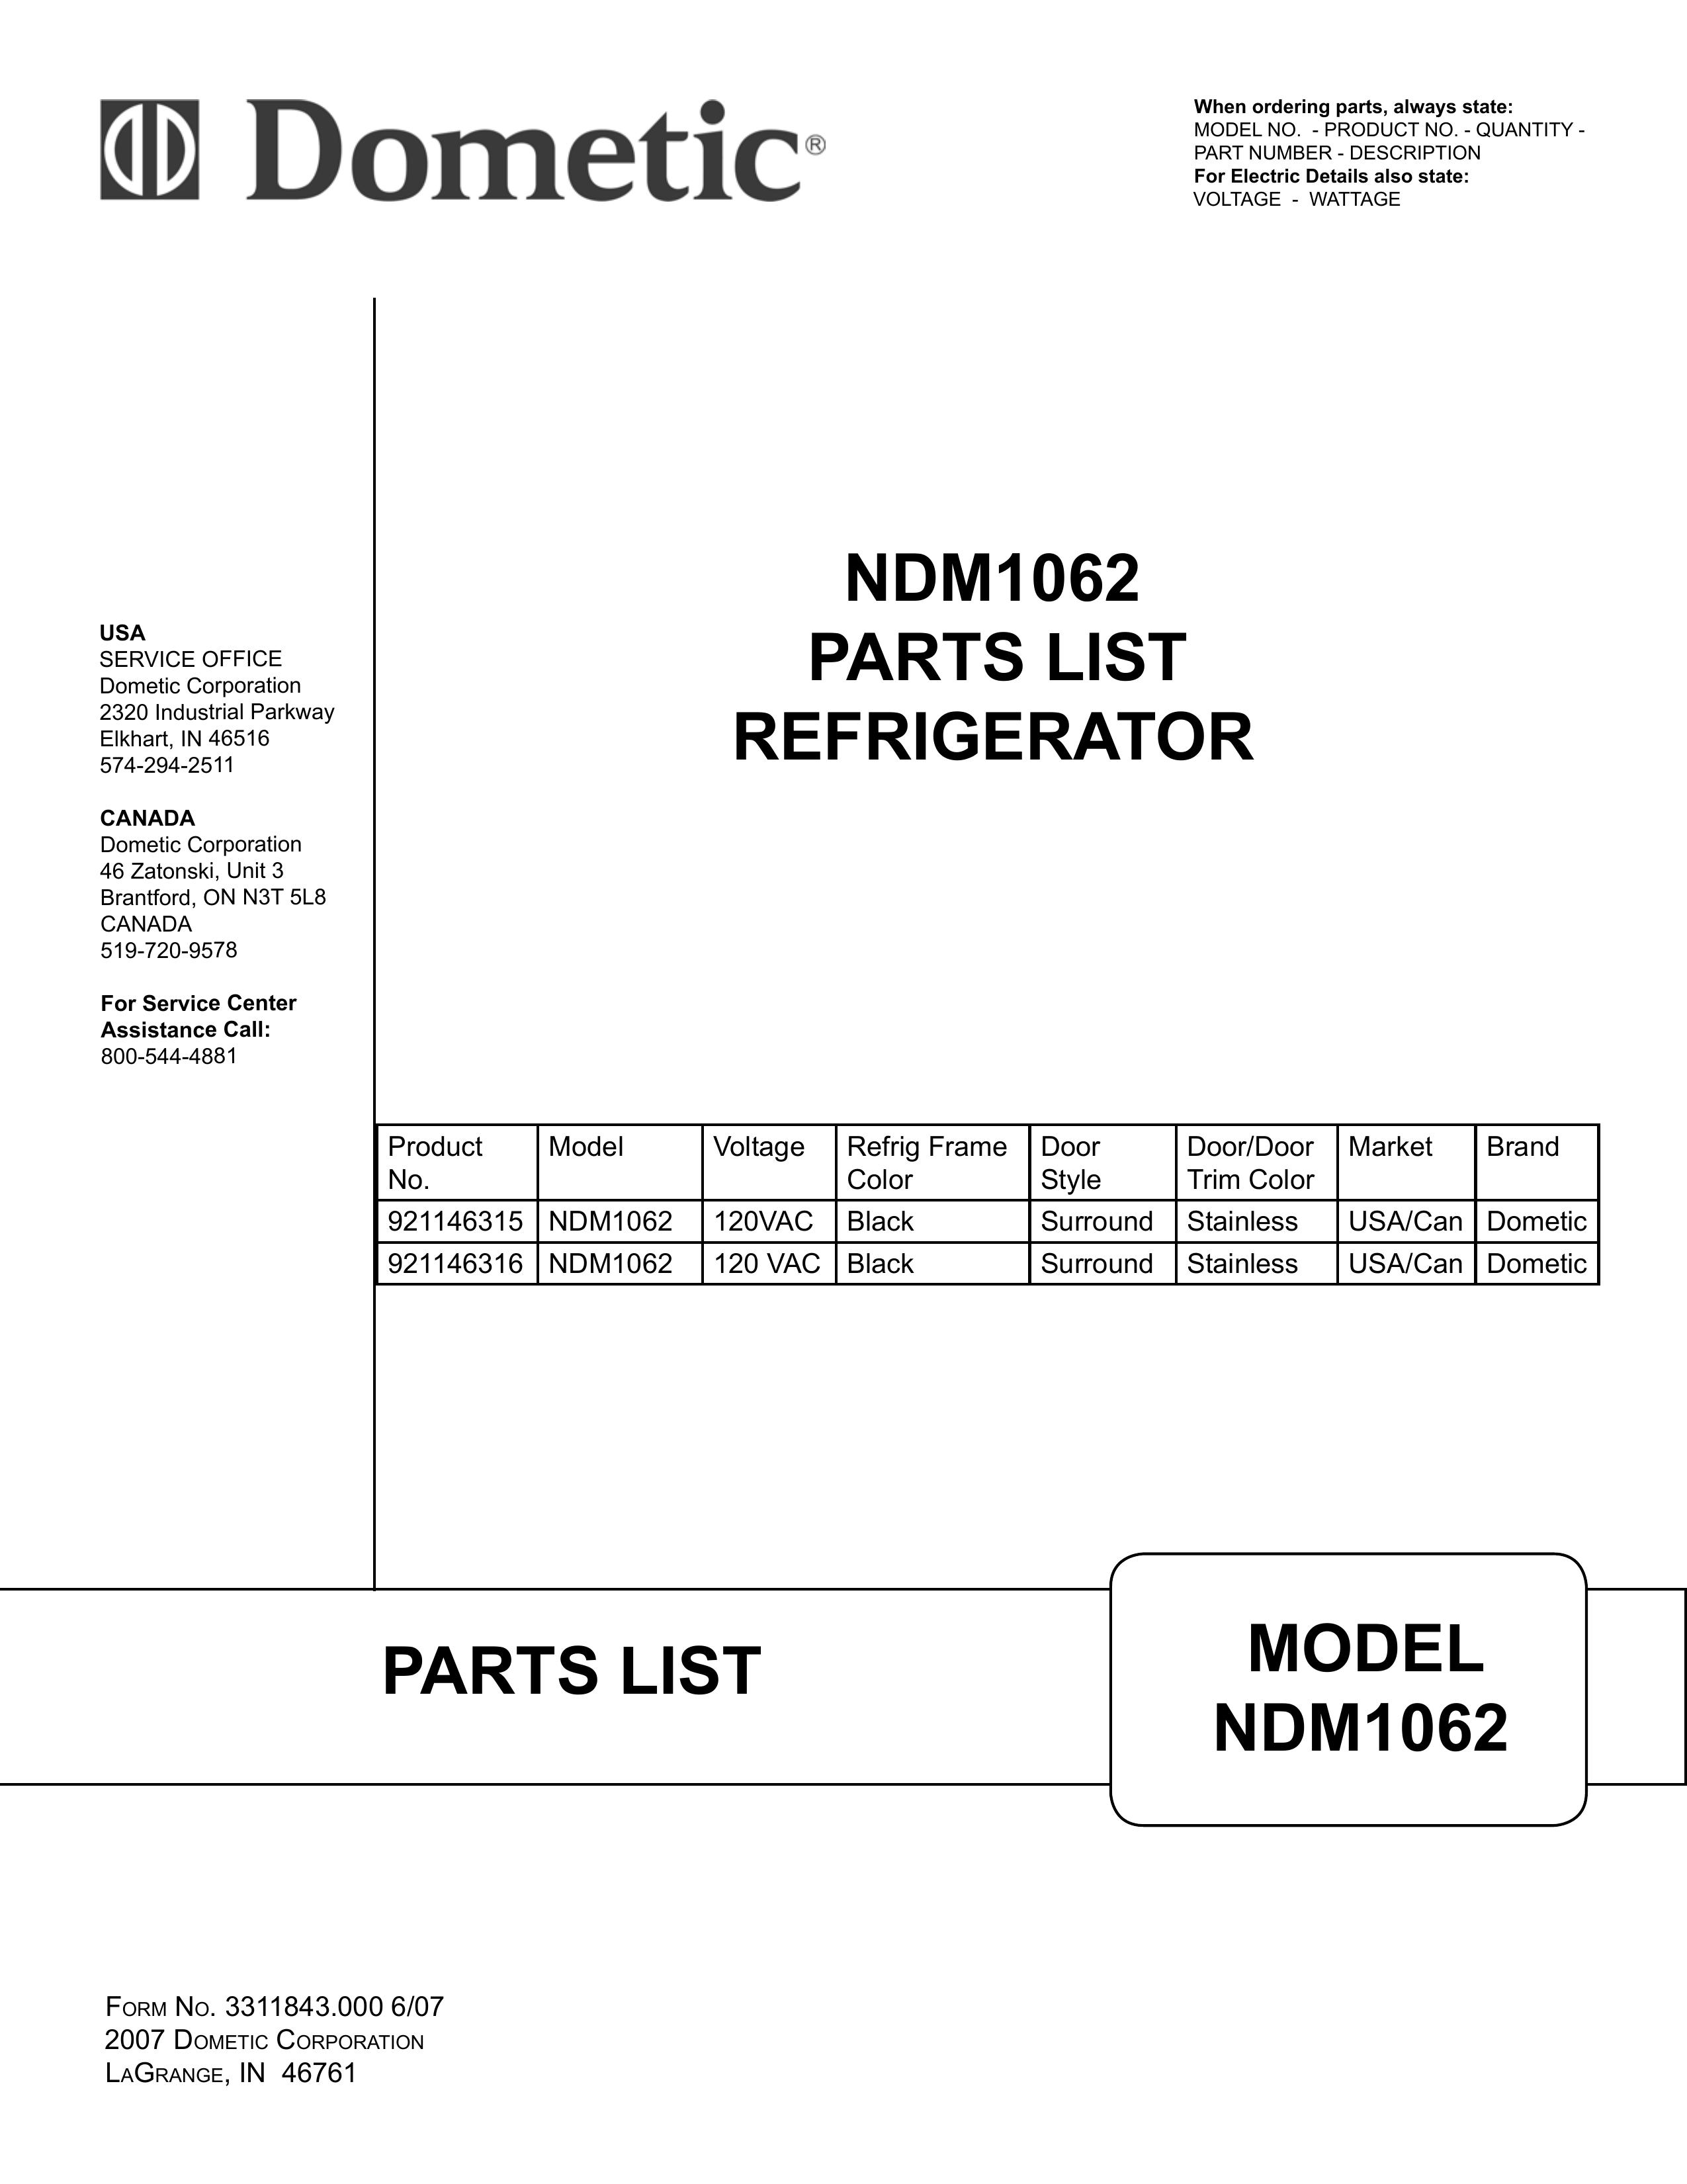 Dometic NDM1062 Refrigerator User Manual